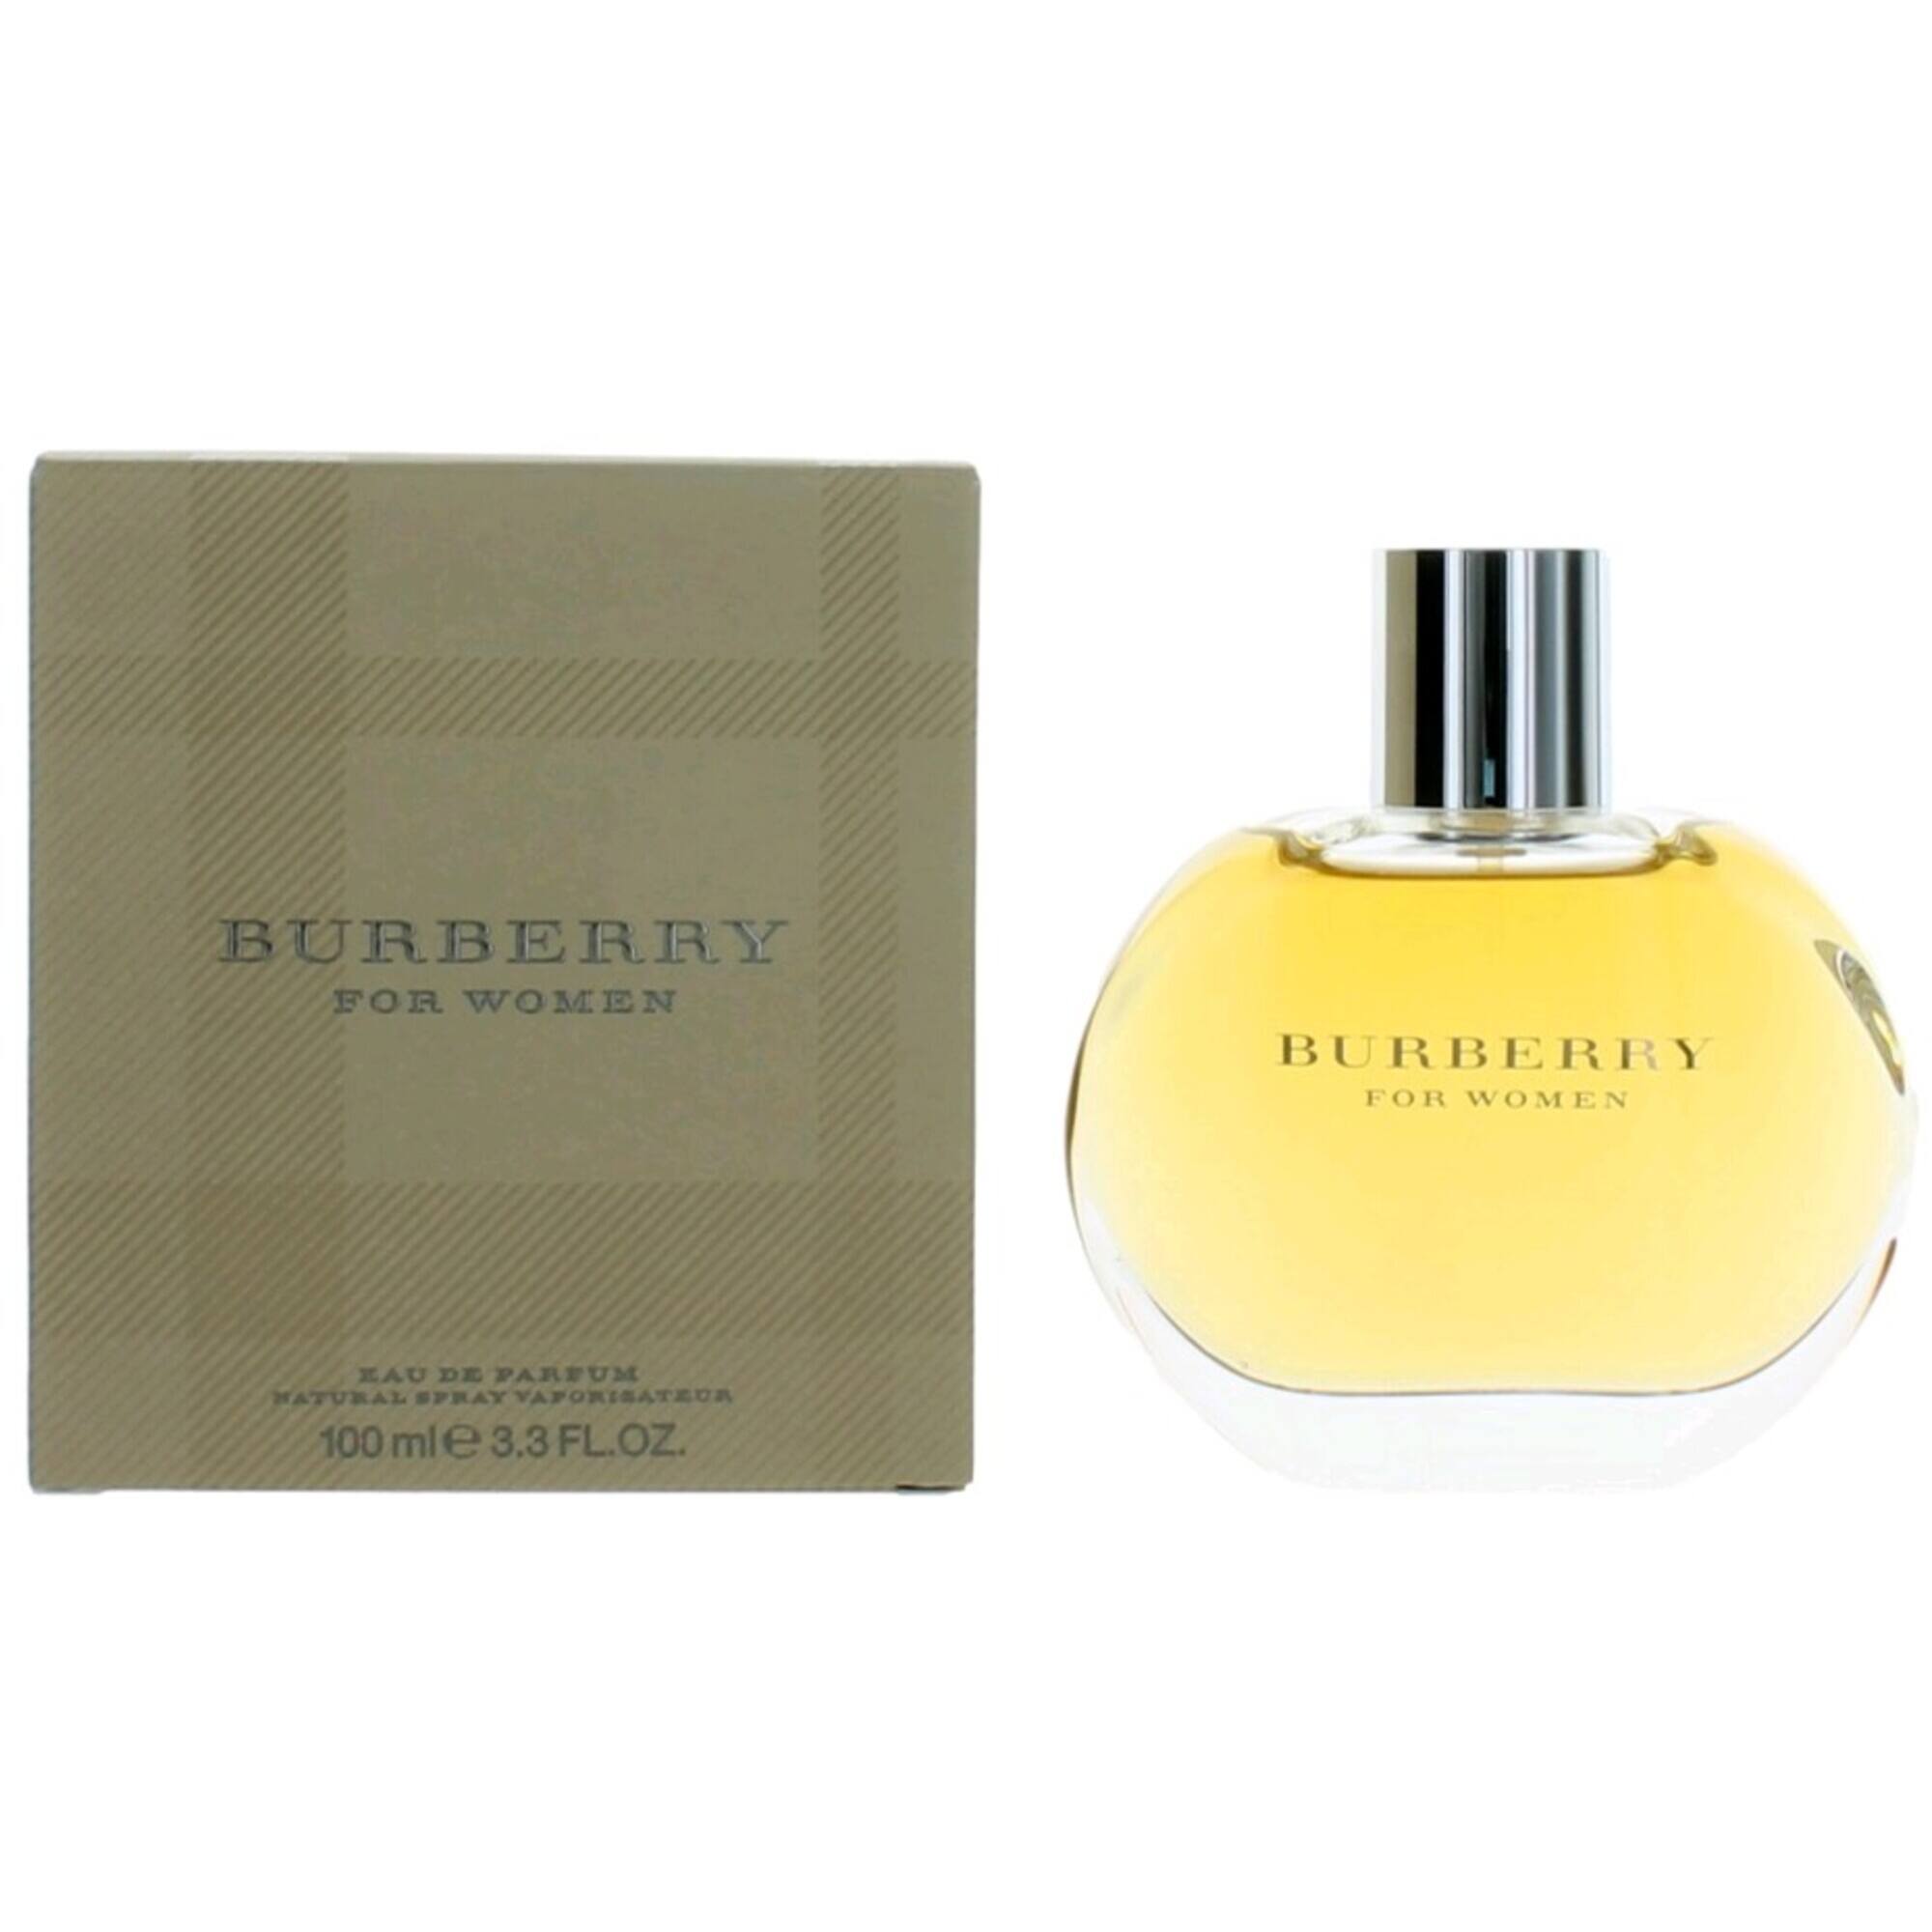 Burberry Women's Eau De Parfum Spray - Captivating Sexy Base Note Soft, 3.3 oz